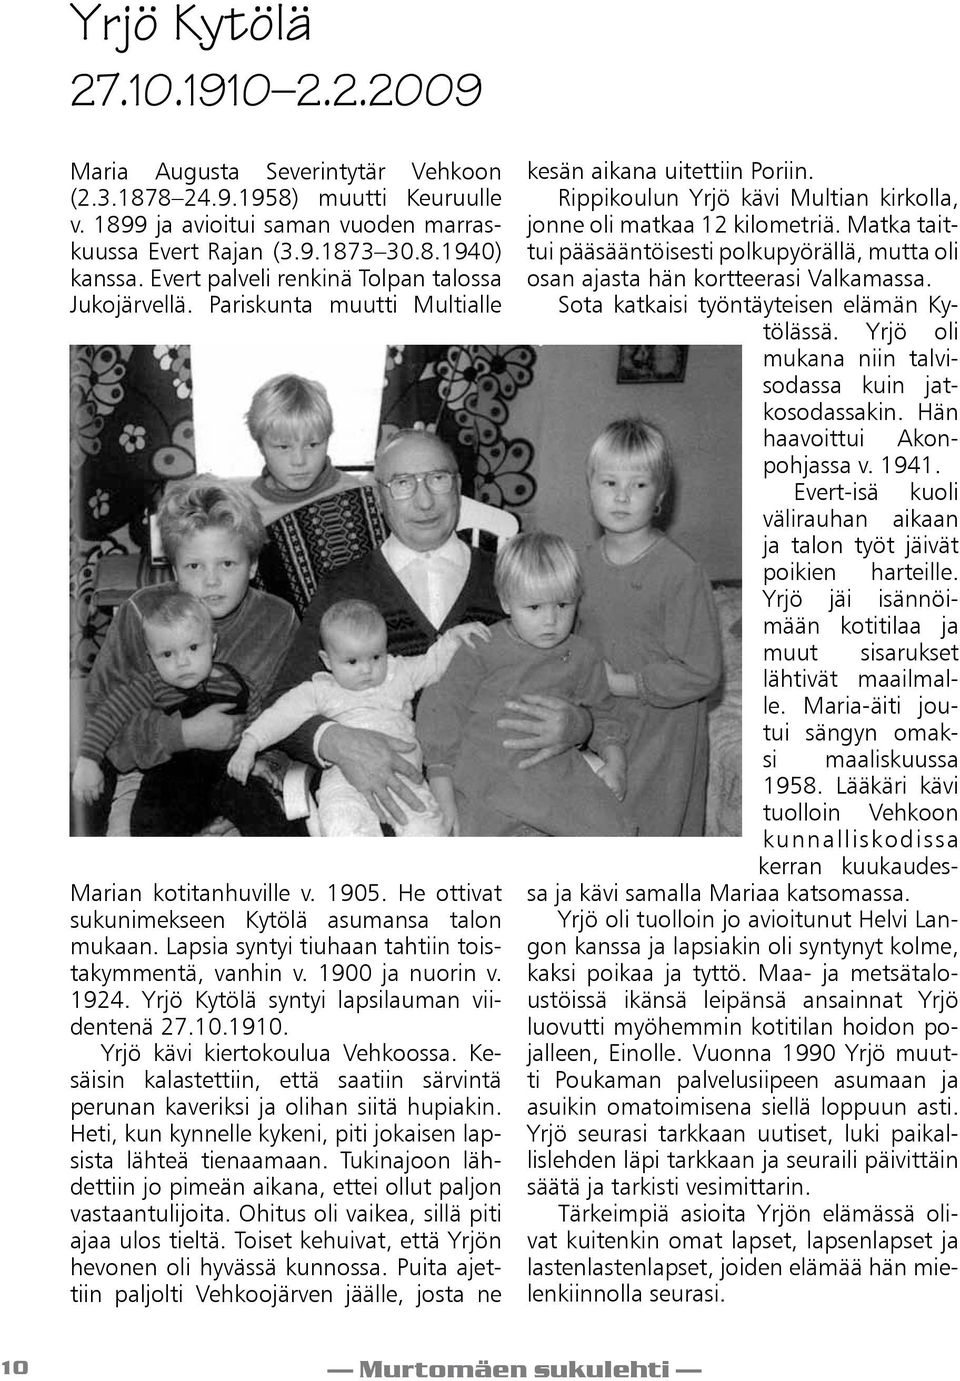 Lapsia syntyi tiuhaan tahtiin toistakymmentä, vanhin v. 1900 ja nuorin v. 1924. Yrjö Kytölä syntyi lapsilauman viidentenä 27.10.1910. Yrjö kävi kiertokoulua Vehkoossa.